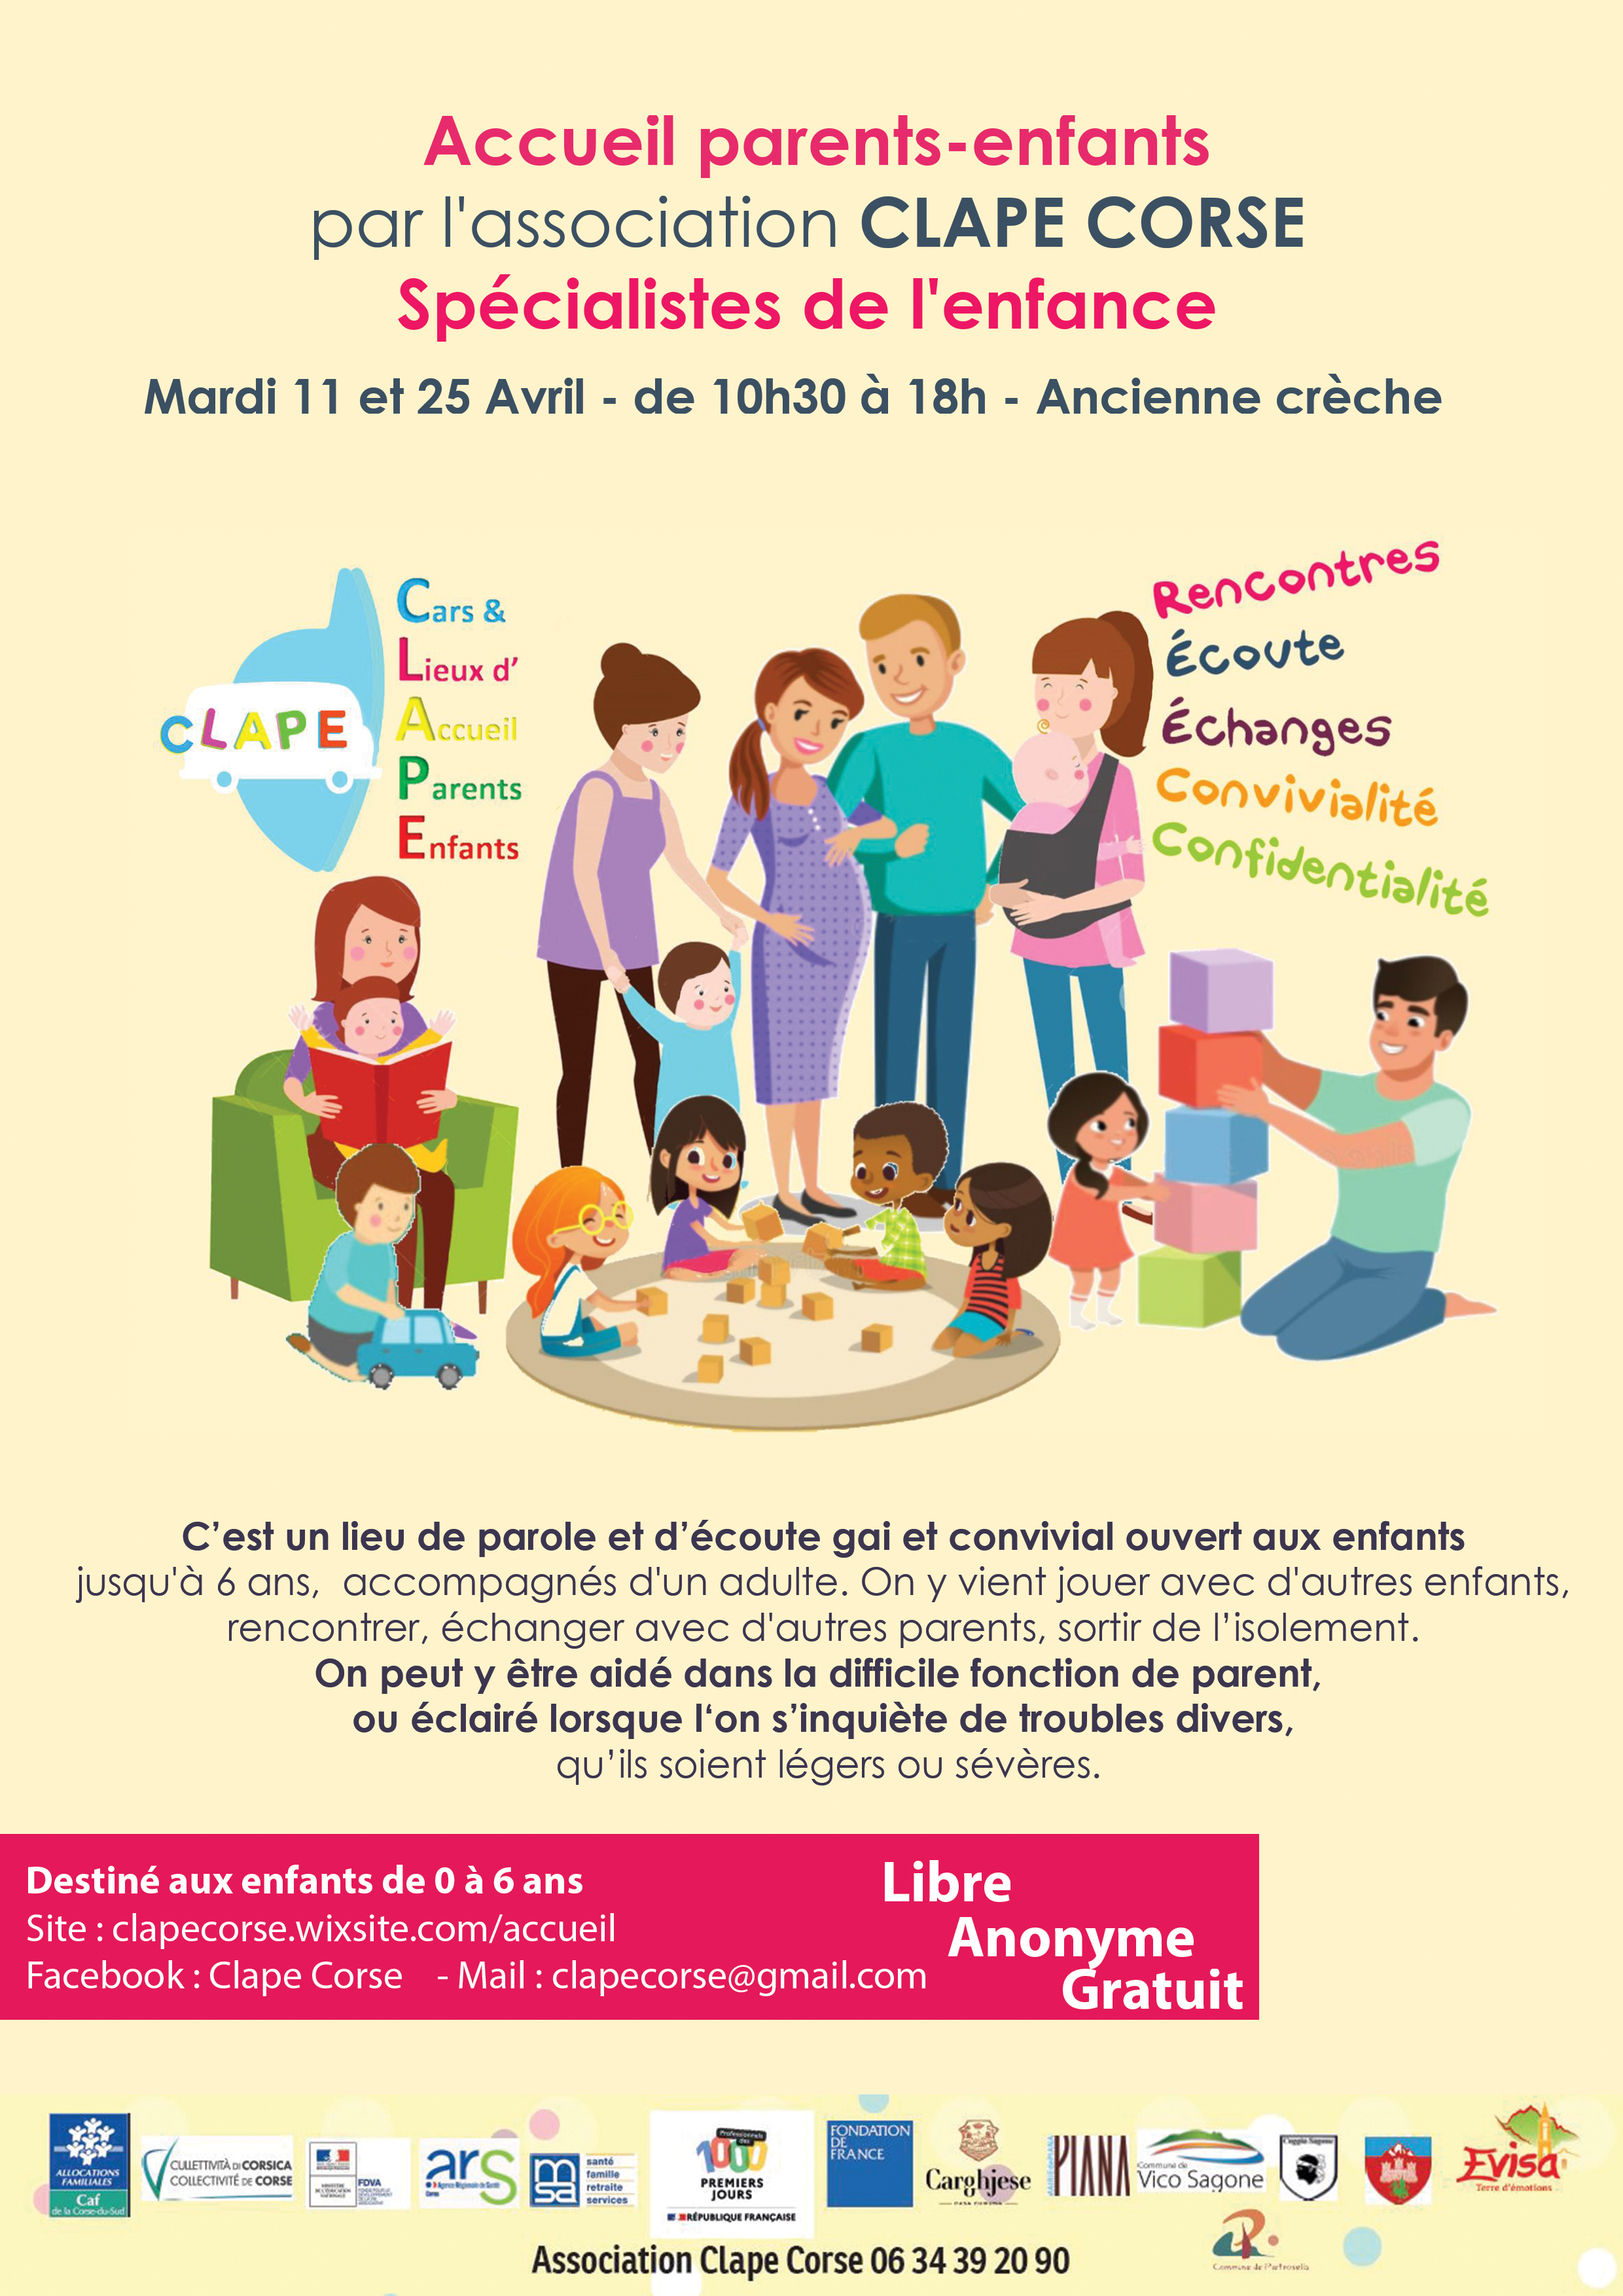 Accueil parents-enfants Mardi 11 et 25 Avril par l'association CLAPE CORSE - Spécialistes de l'enfance 